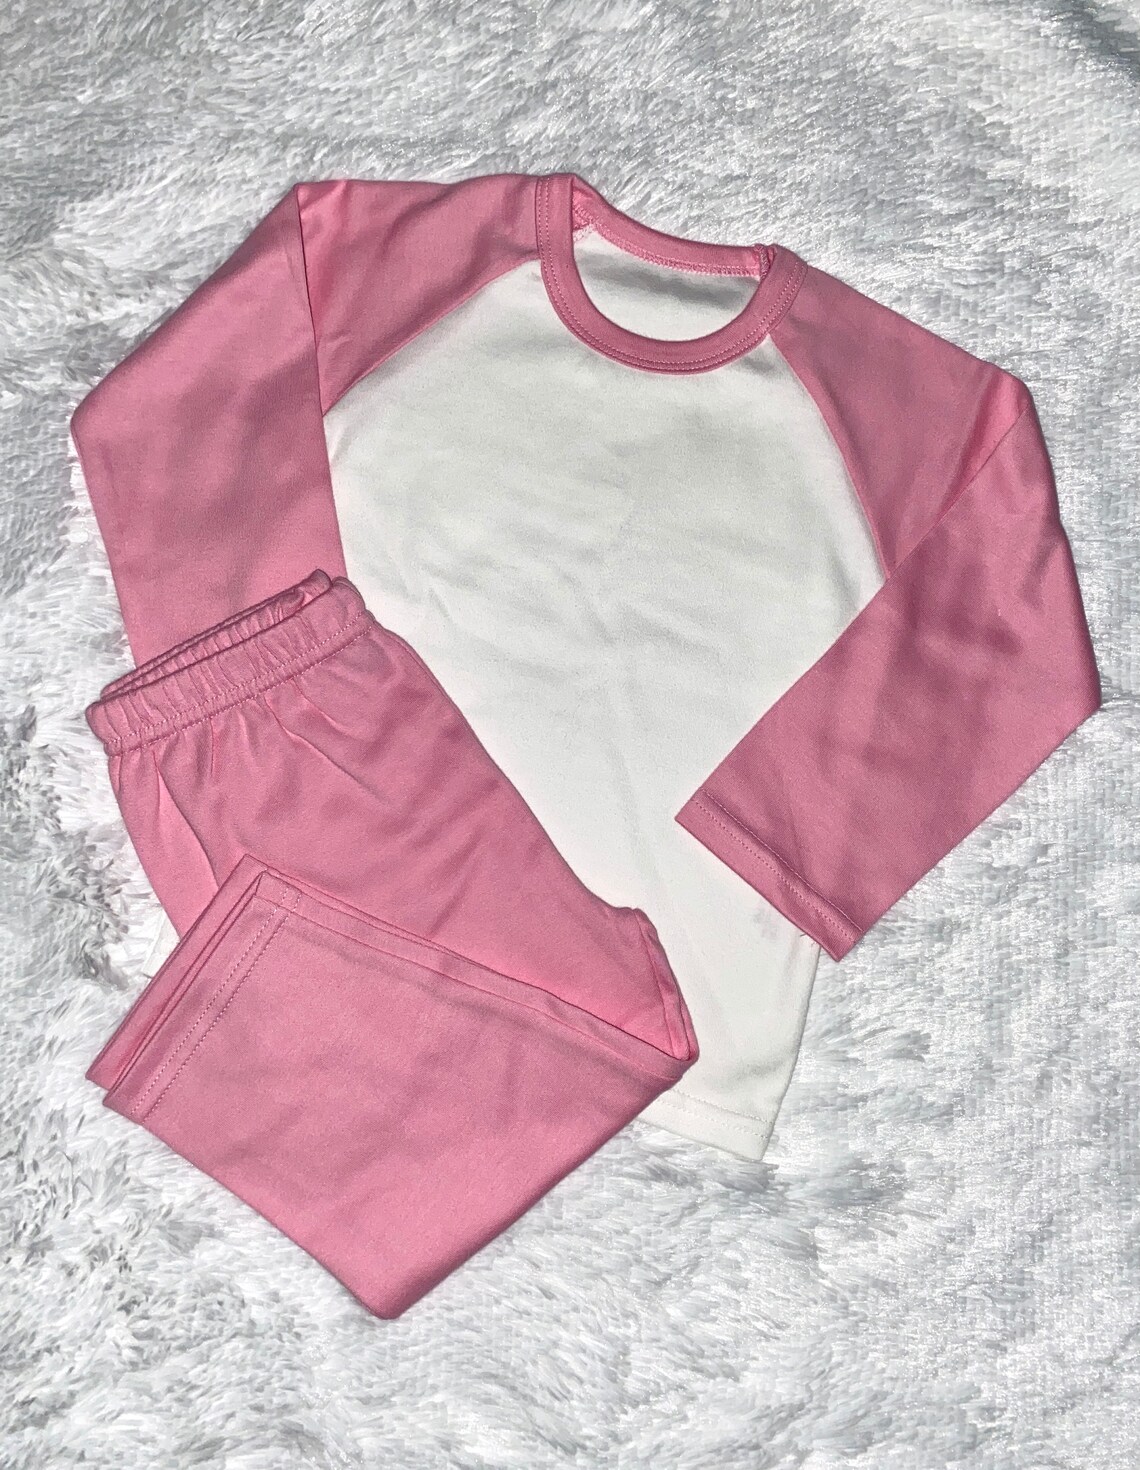 Personalised Childrens Pyjamas Kids Baby Clothing - Etsy UK